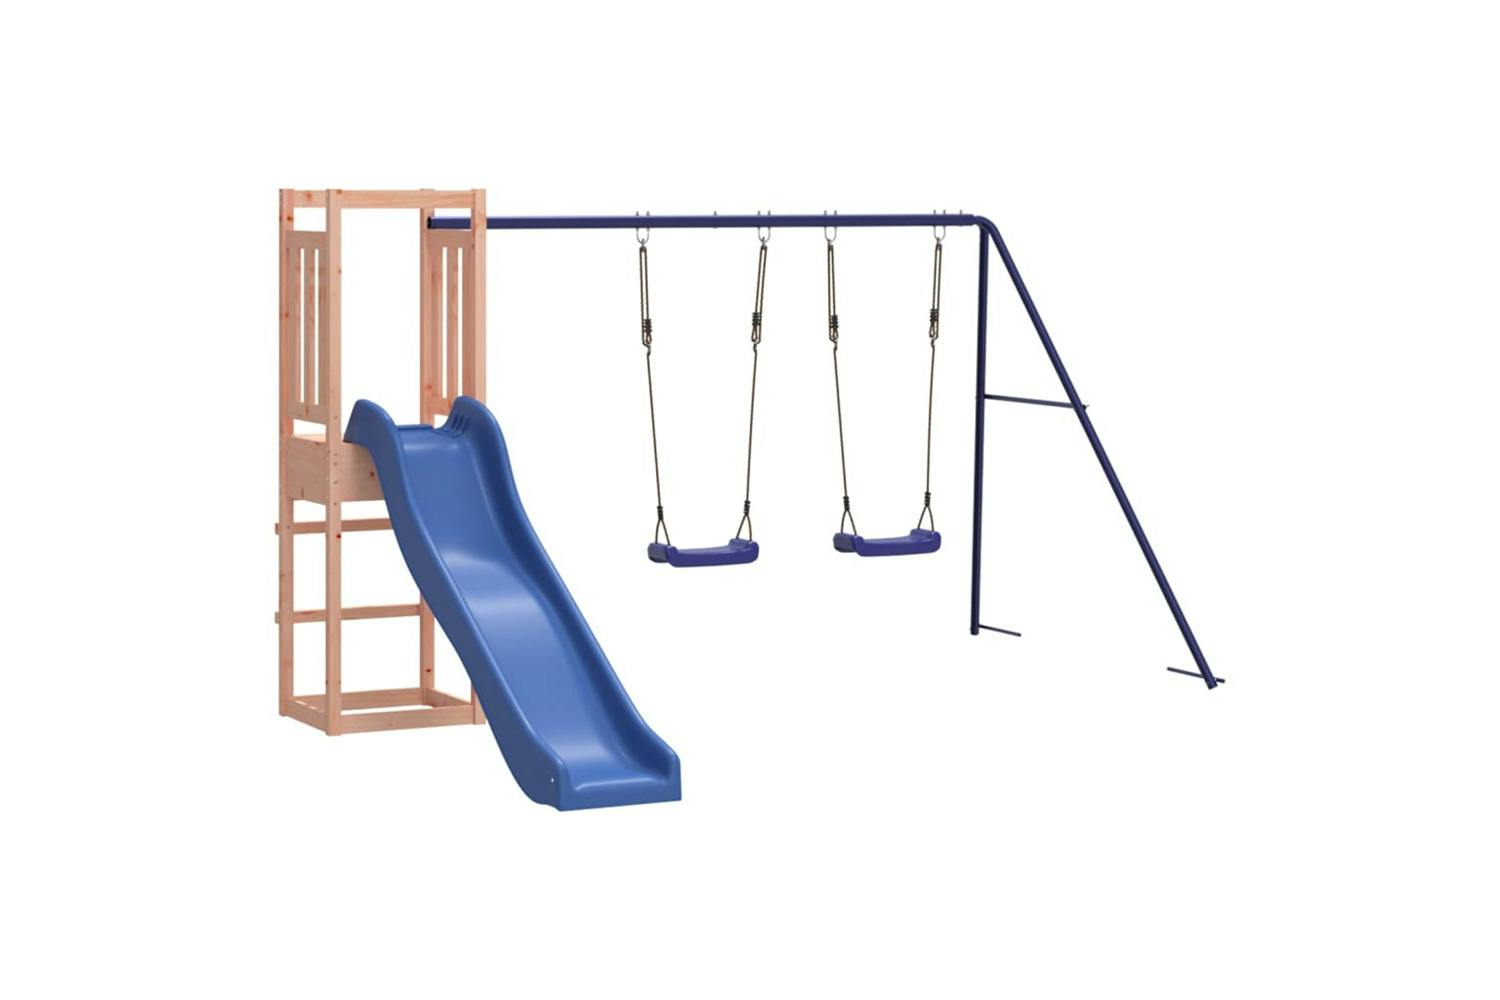 Vidaxl 3155958 Playhouse With Slide Swings Solid Wood Douglas